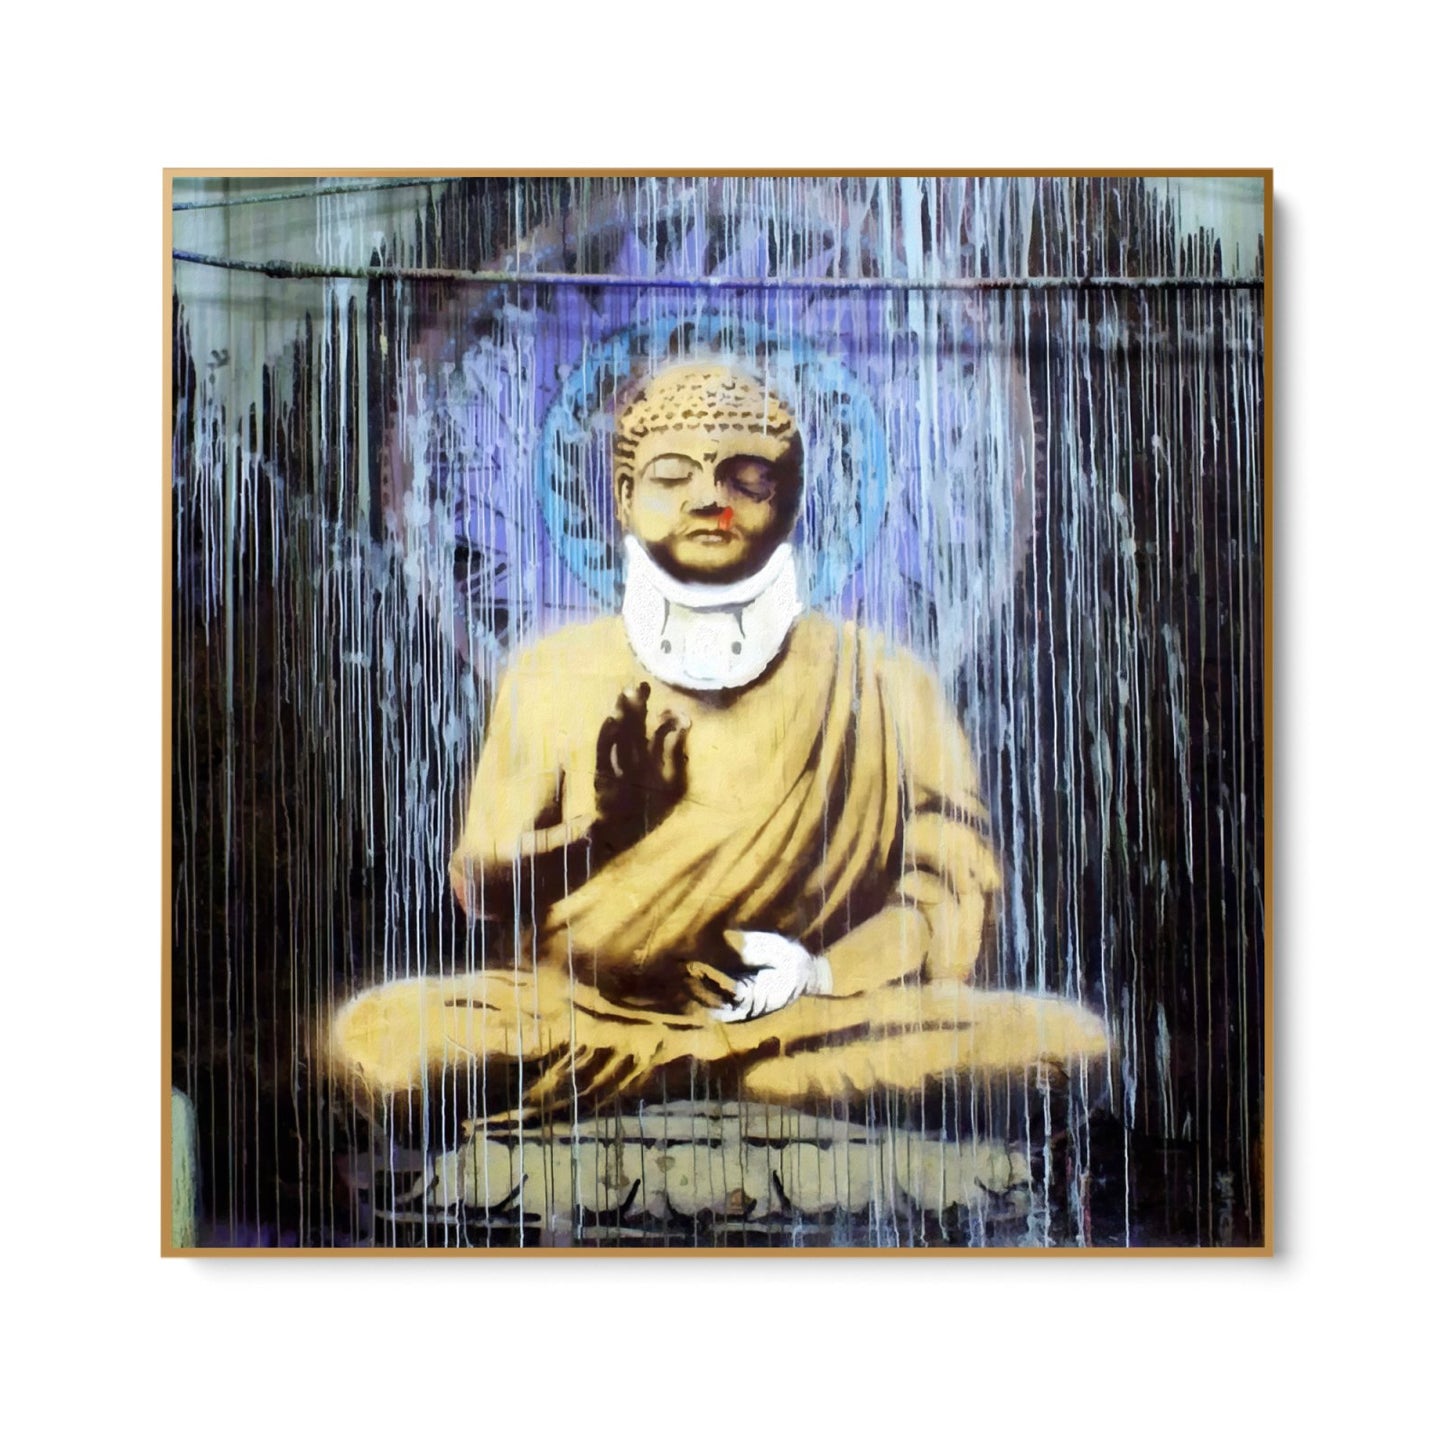 Povrijeđeni Buddha, Banksy